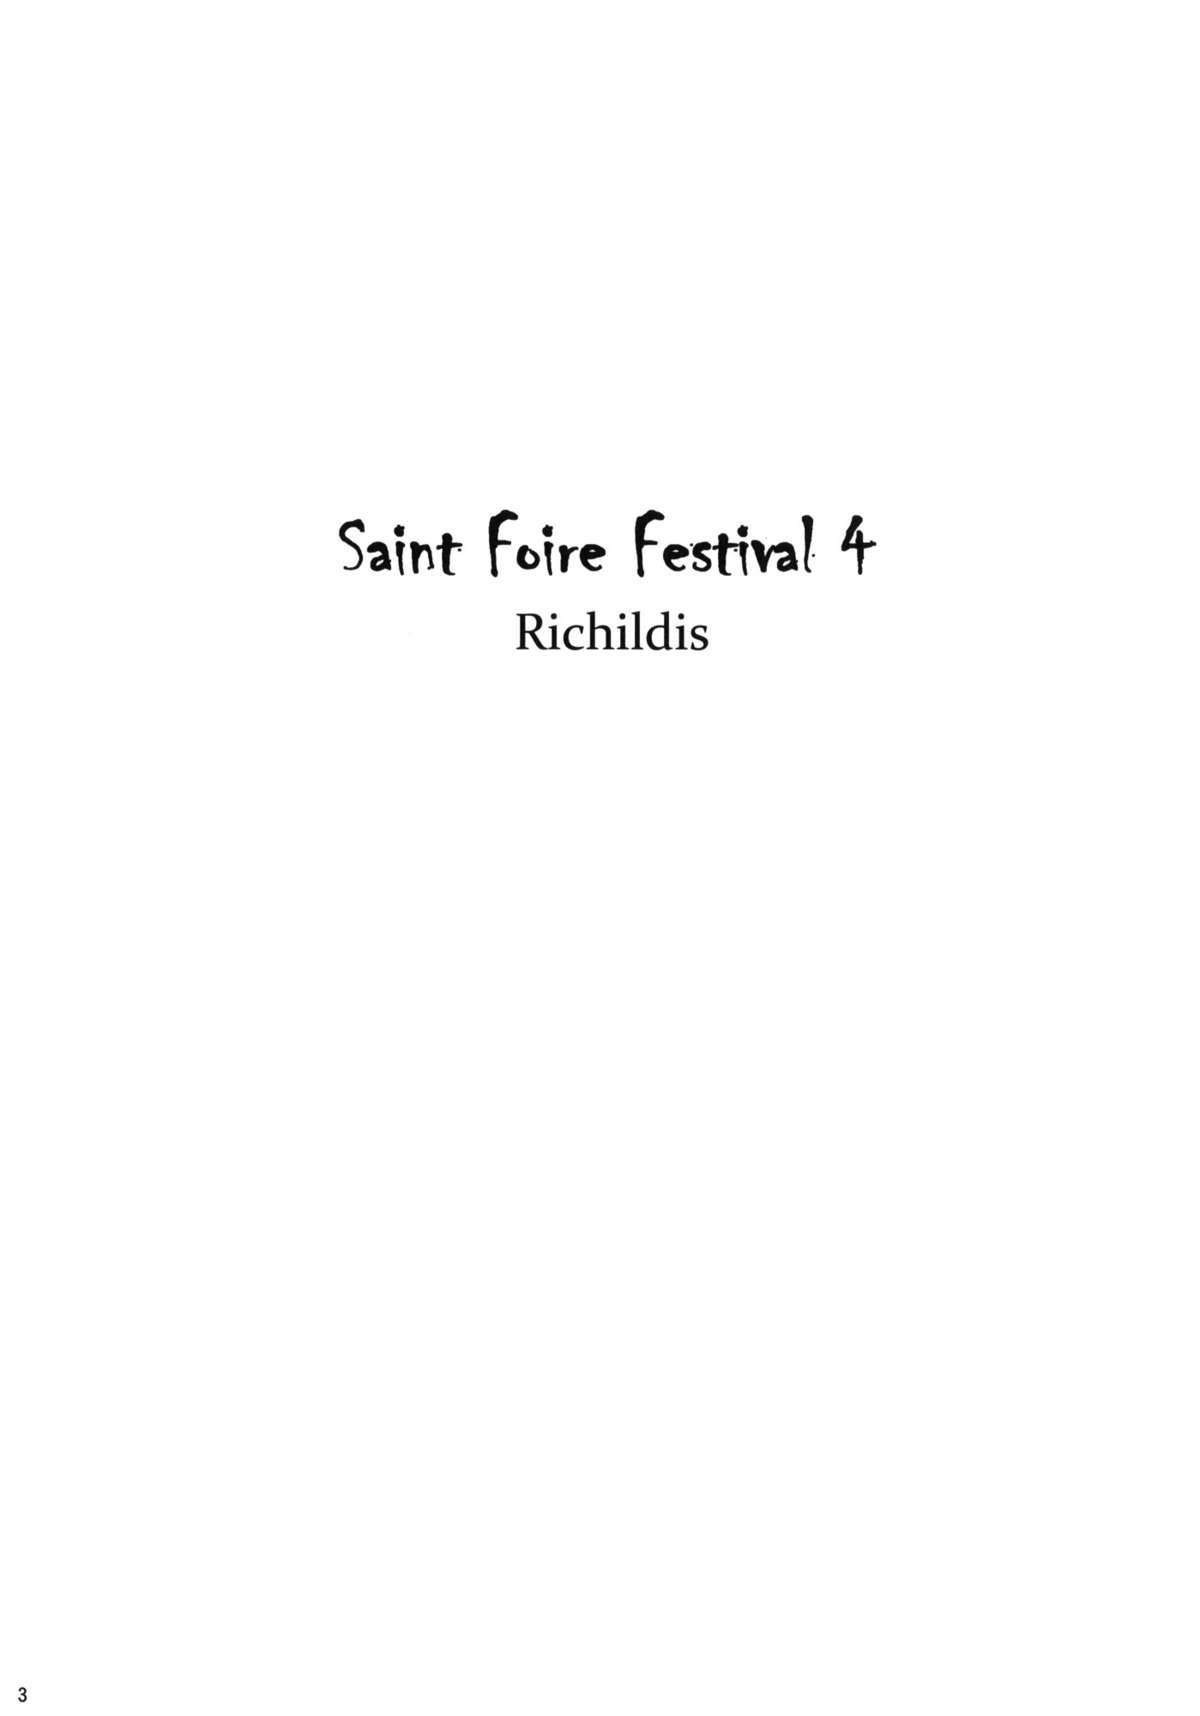 Saint Foire Festival 4 Richildis 1